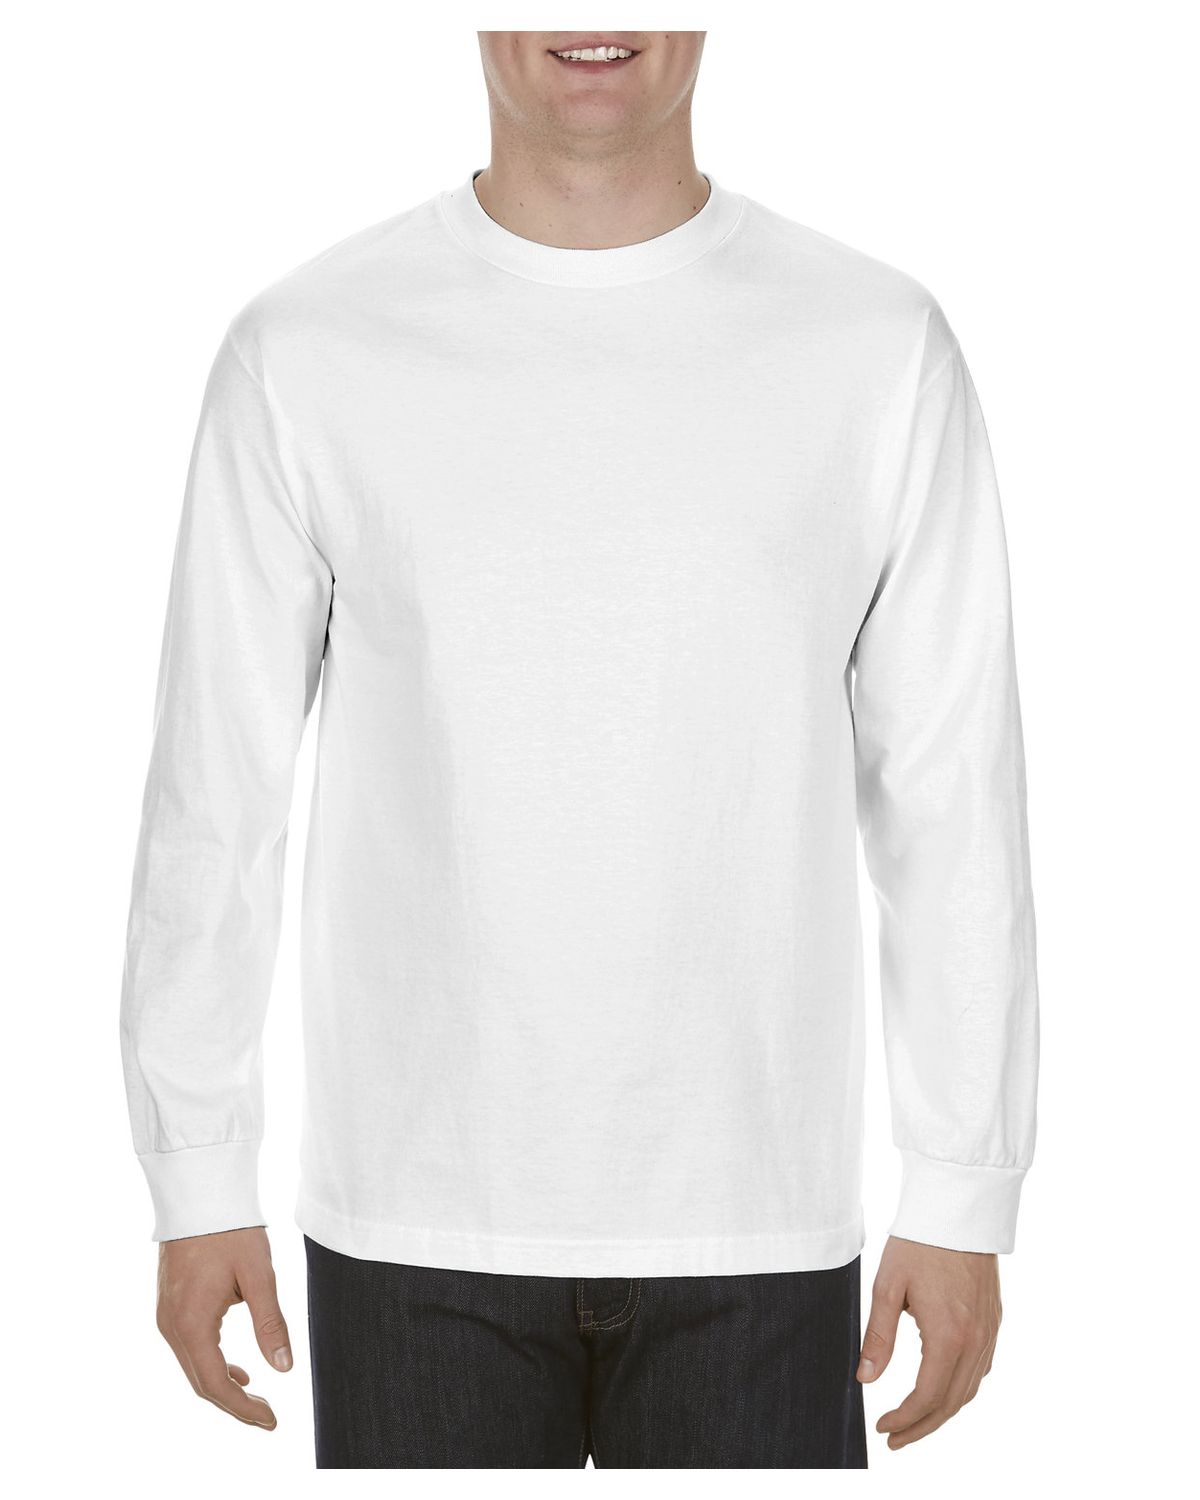 'Alstyle AL1304 Adult 6.0 Oz., 100% Cotton Long Sleeve T Shirt'